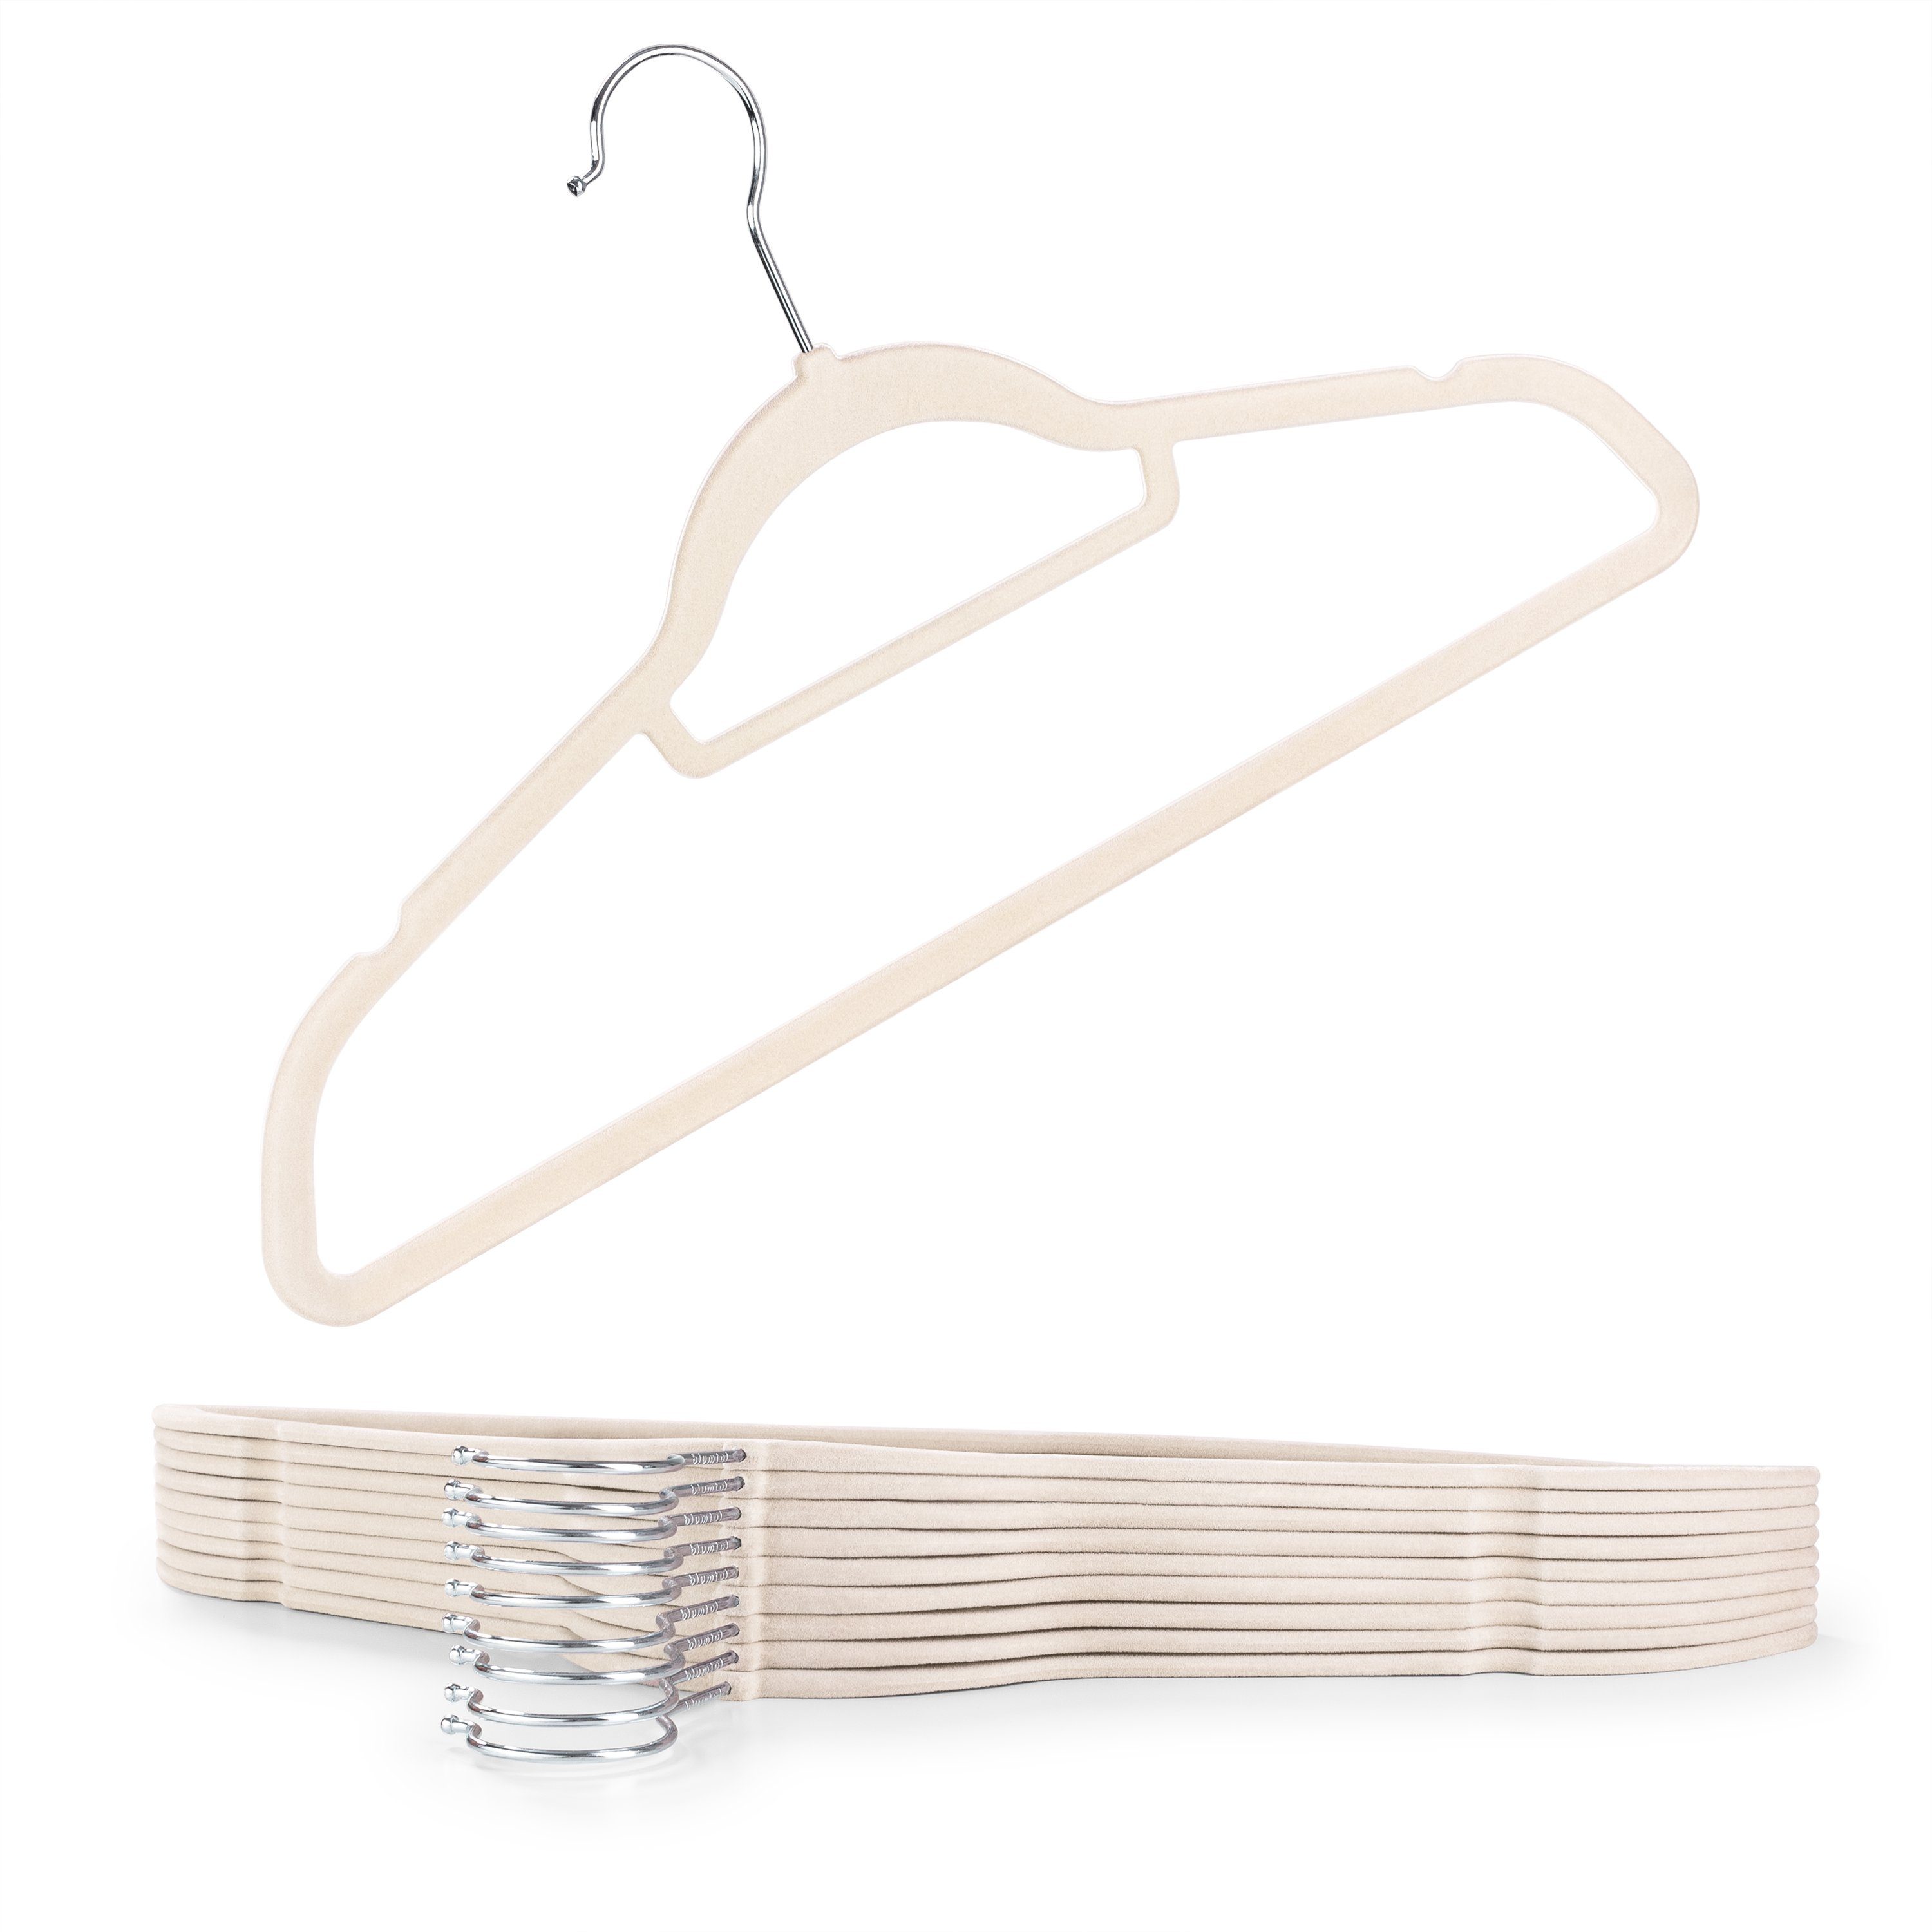 Holz Kleiderbügel in Weiß 50 Stück anti-Rutsch Design für Jacken Hosen Hemden 